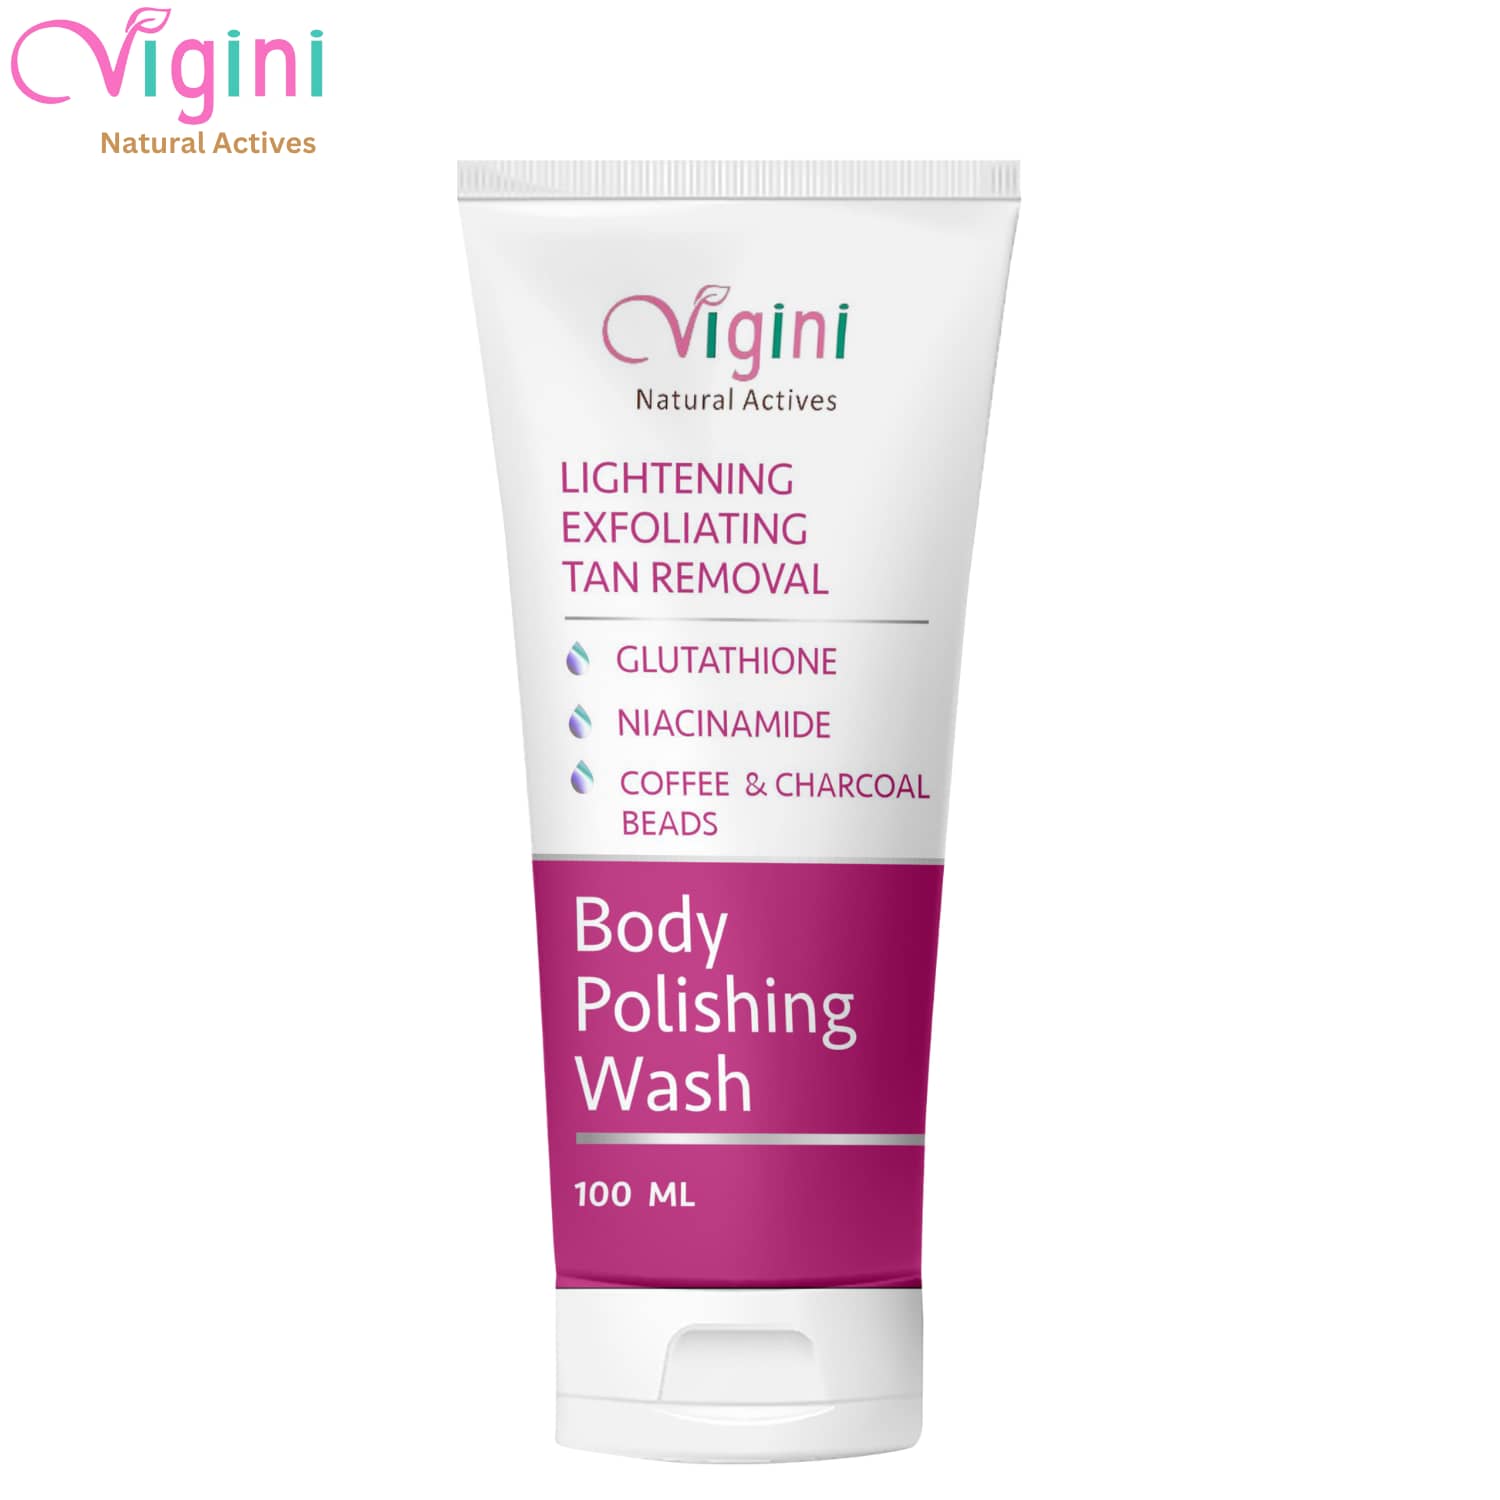 Vigini Skin Lightening Body Whitening Polishing Exfoliating Coffee Scrub Wash for Tan & Pigmentation-100ml